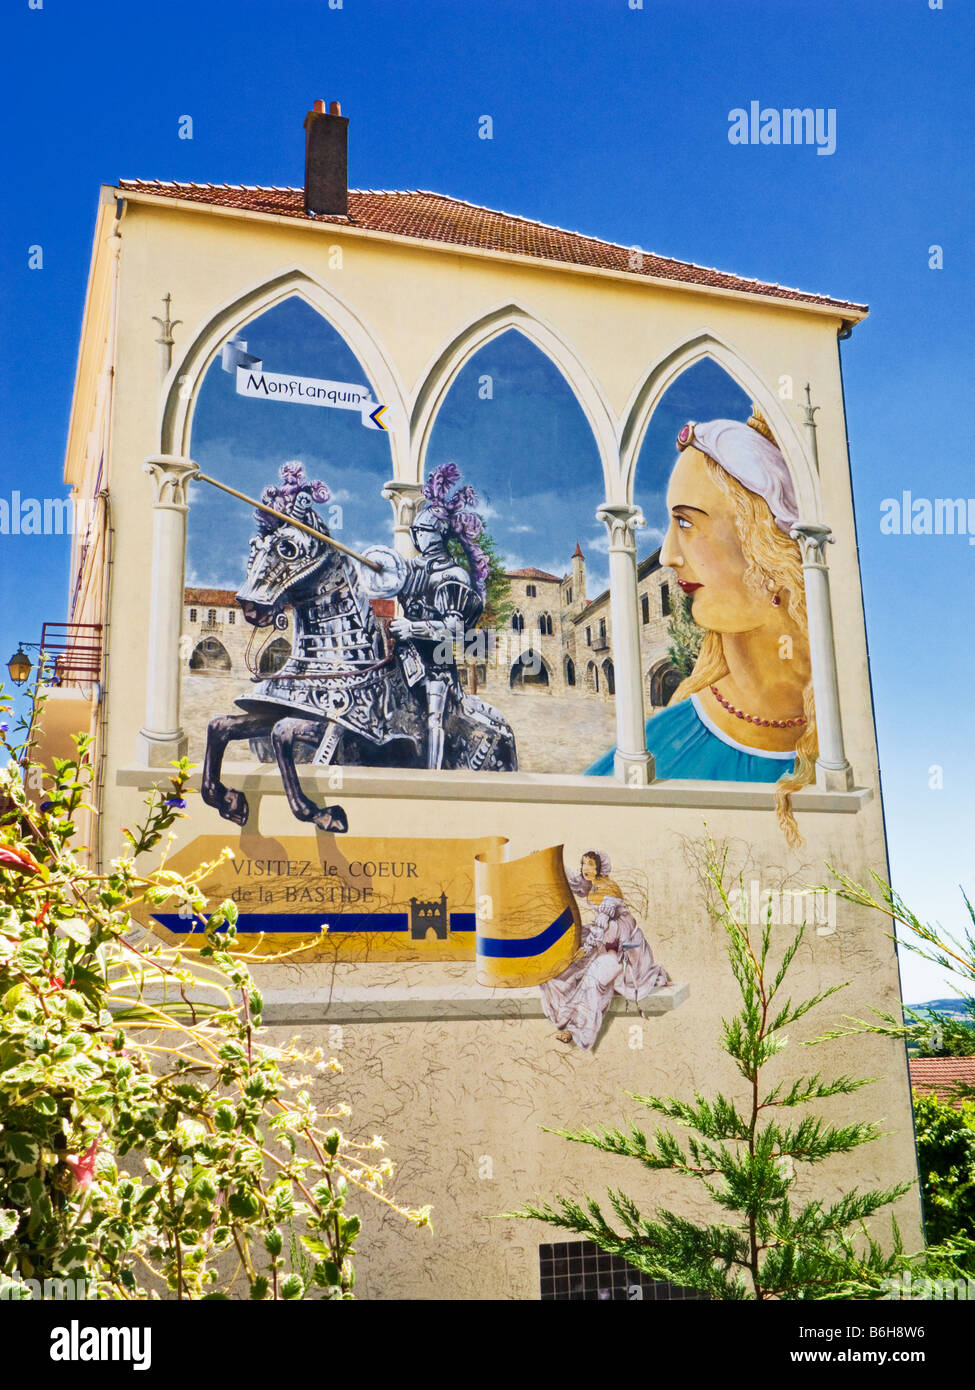 Wandbild gemalt auf einer Hauswand in Monflanquin Lot et Garonne Südwesten Frankreich Europa Stockfoto